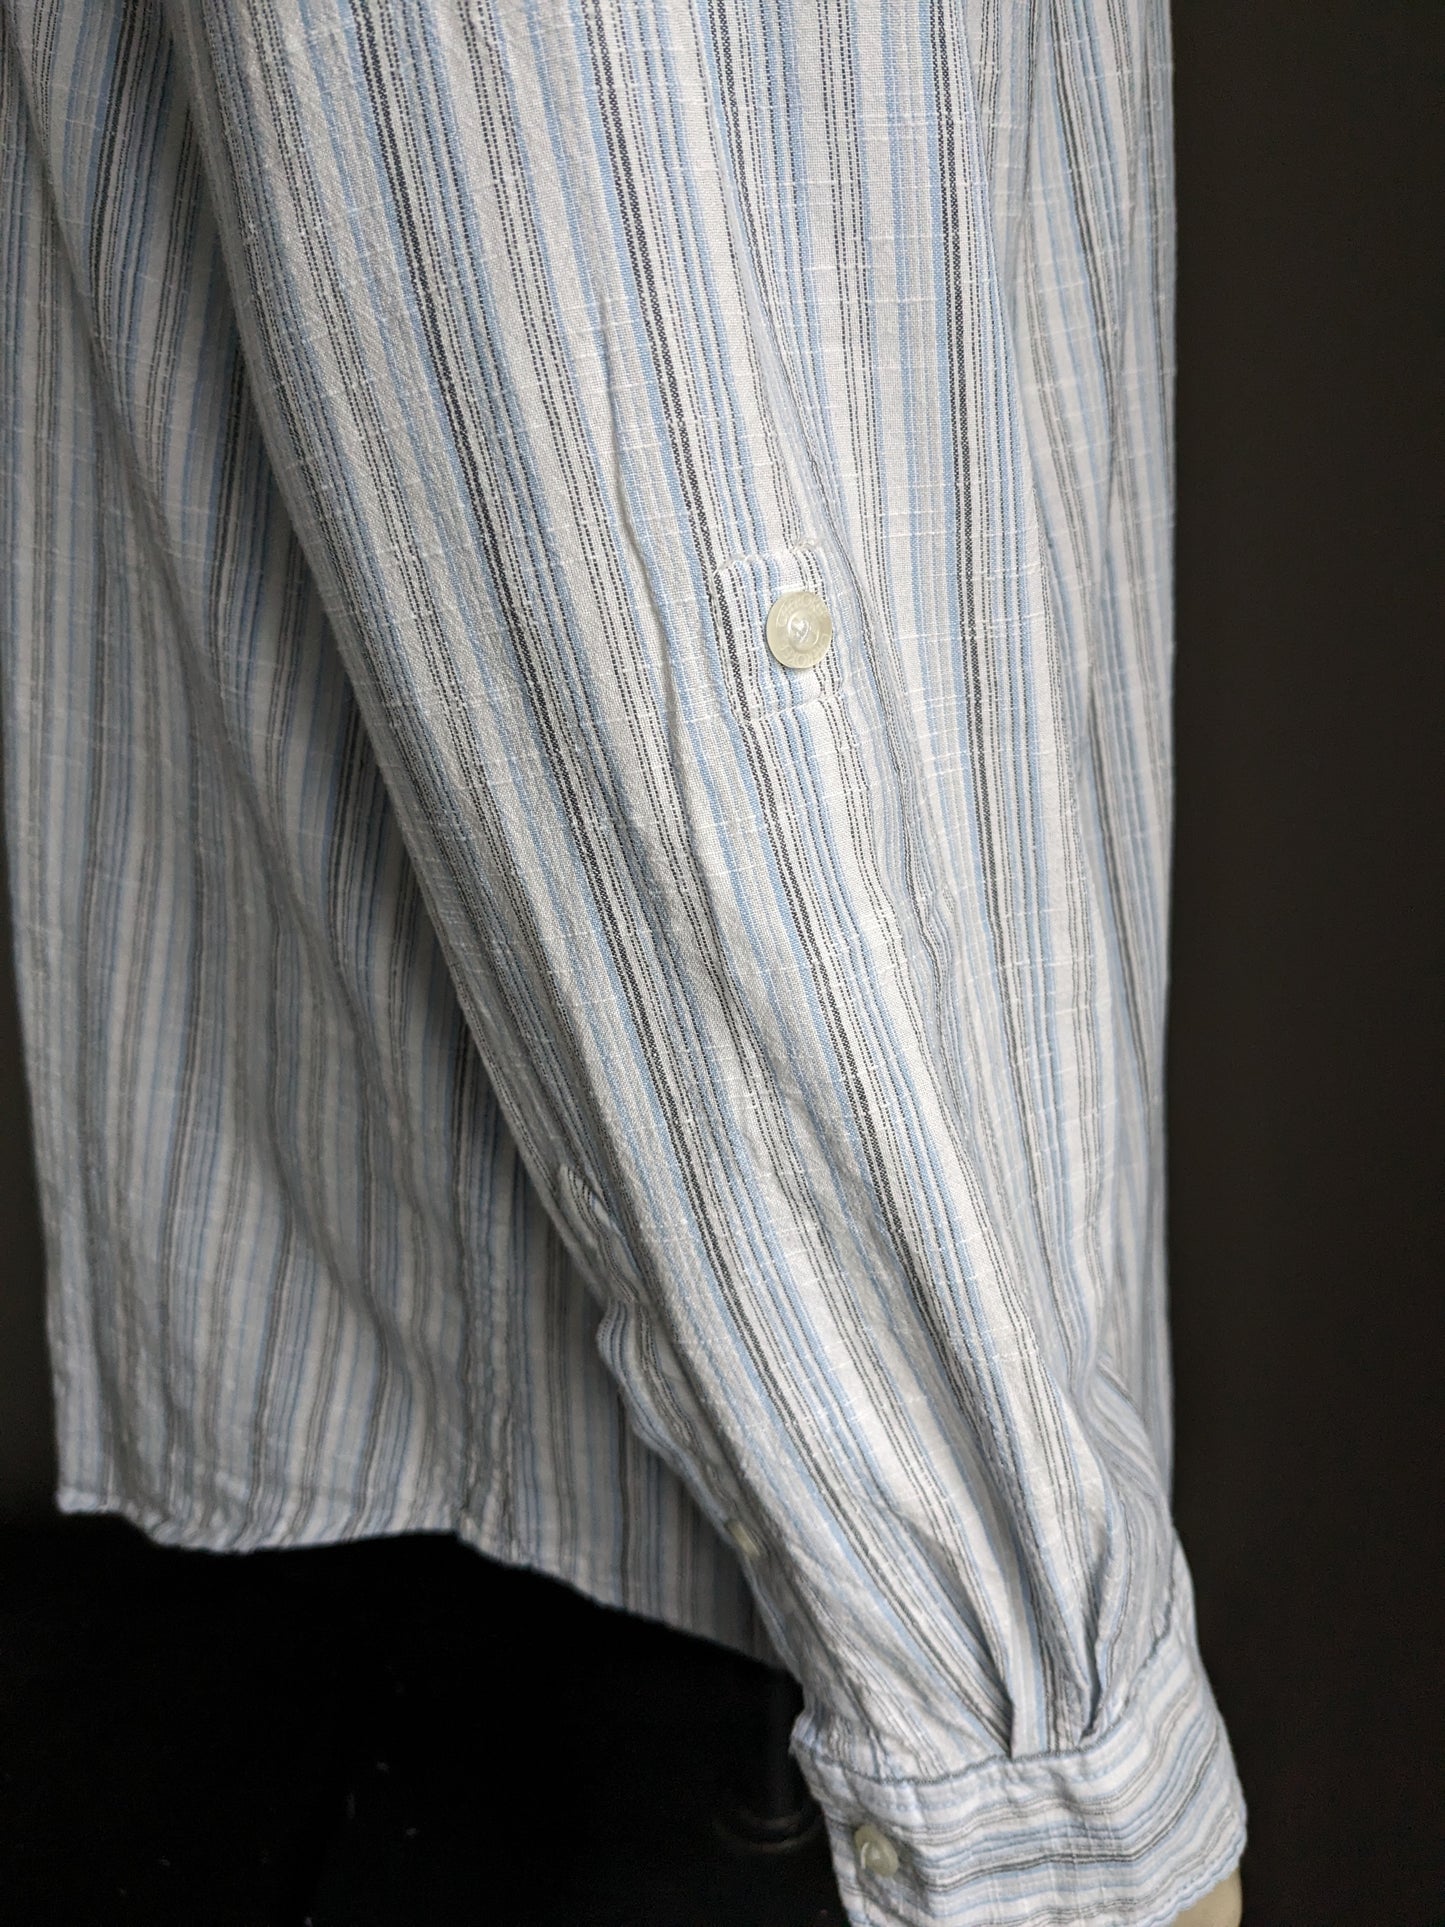 Chemise / chemise de cherokee vintage avec mao / col levé. Gris blanc bleu rayé. Taille xl.